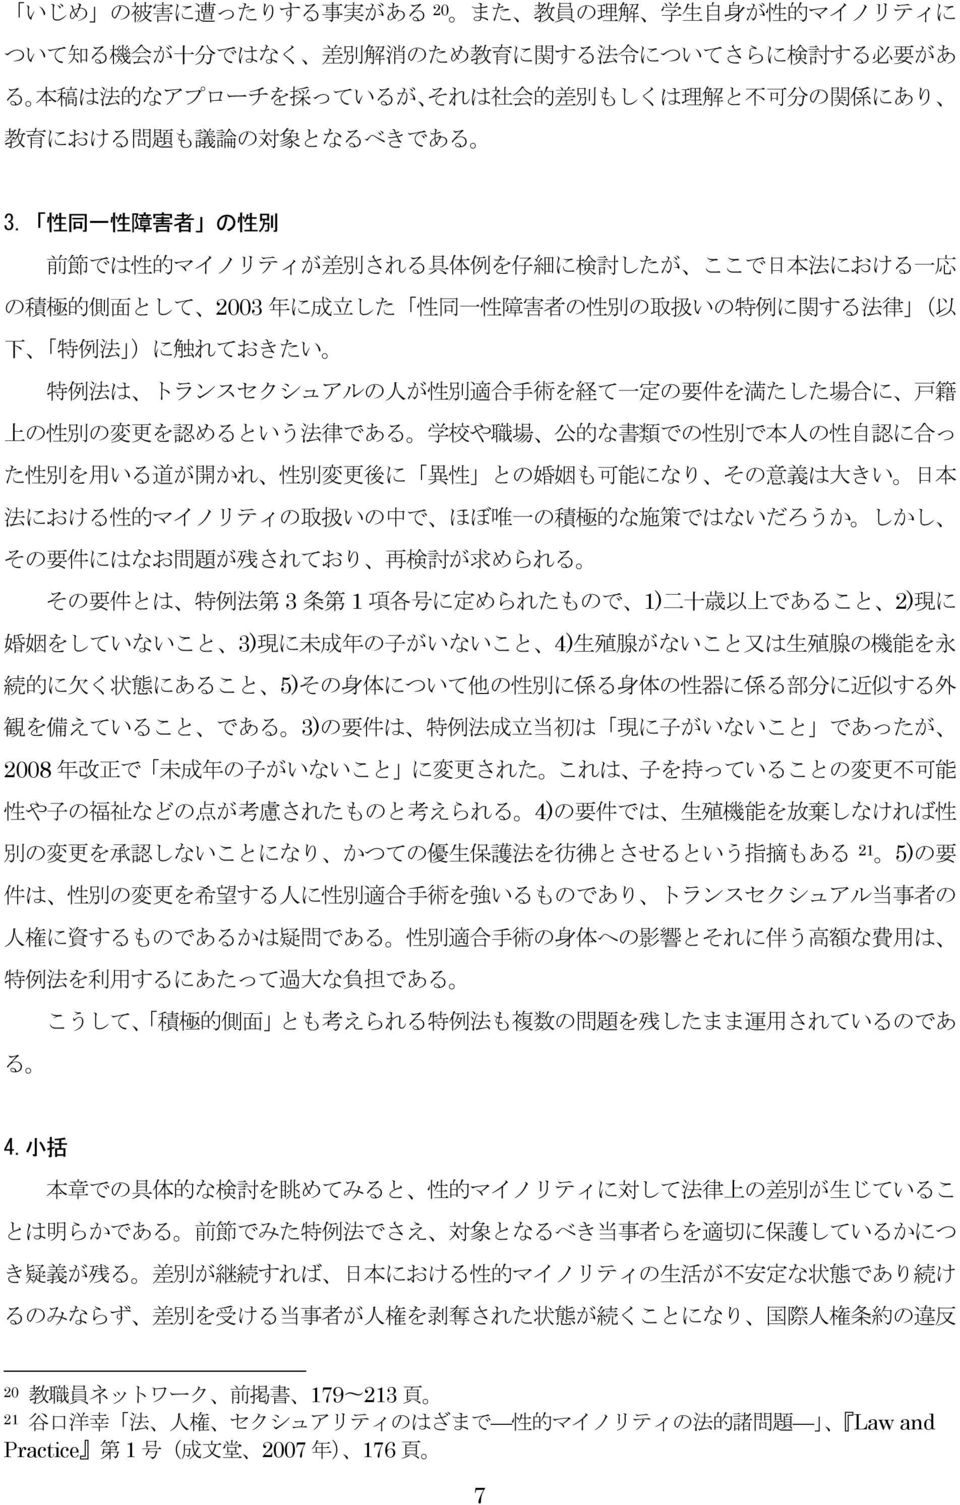 性 同 一 性 障 害 者 の 性 別 前 節 では 性 的 マイノリティが 差 別 される 具 体 例 を 仔 細 に 検 討 したが ここで 日 本 法 における 一 応 の 積 極 的 側 面 として 2003 年 に 成 立 した 性 同 一 性 障 害 者 の 性 別 の 取 扱 いの 特 例 に 関 する 法 律 ( 以 下 特 例 法 )に 触 れておきたい 特 例 法 は